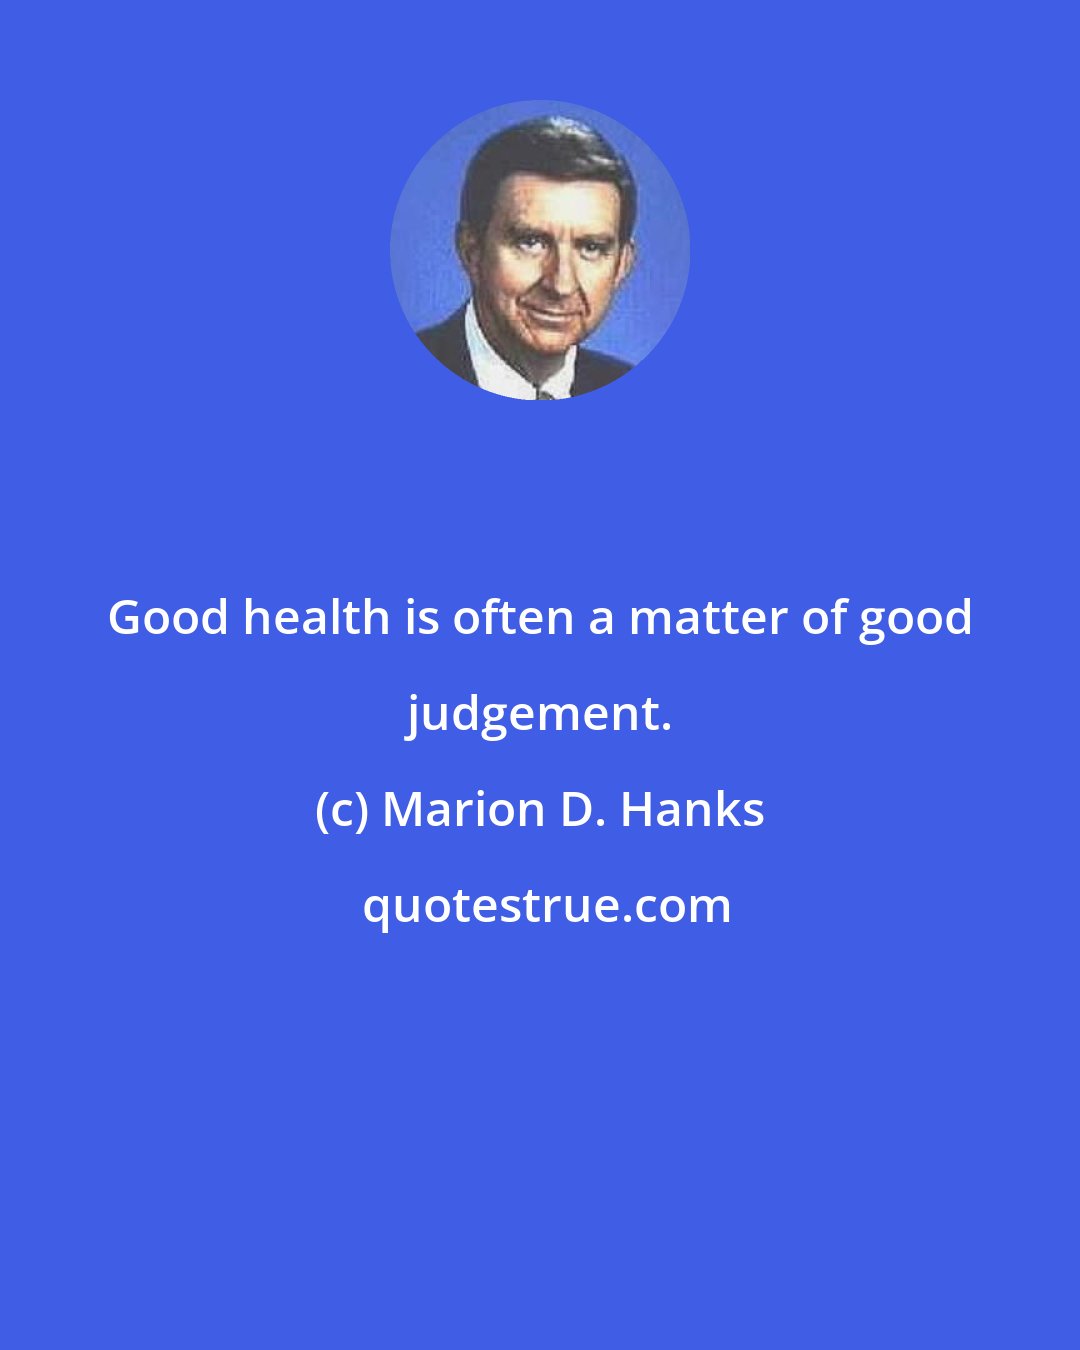 Marion D. Hanks: Good health is often a matter of good judgement.